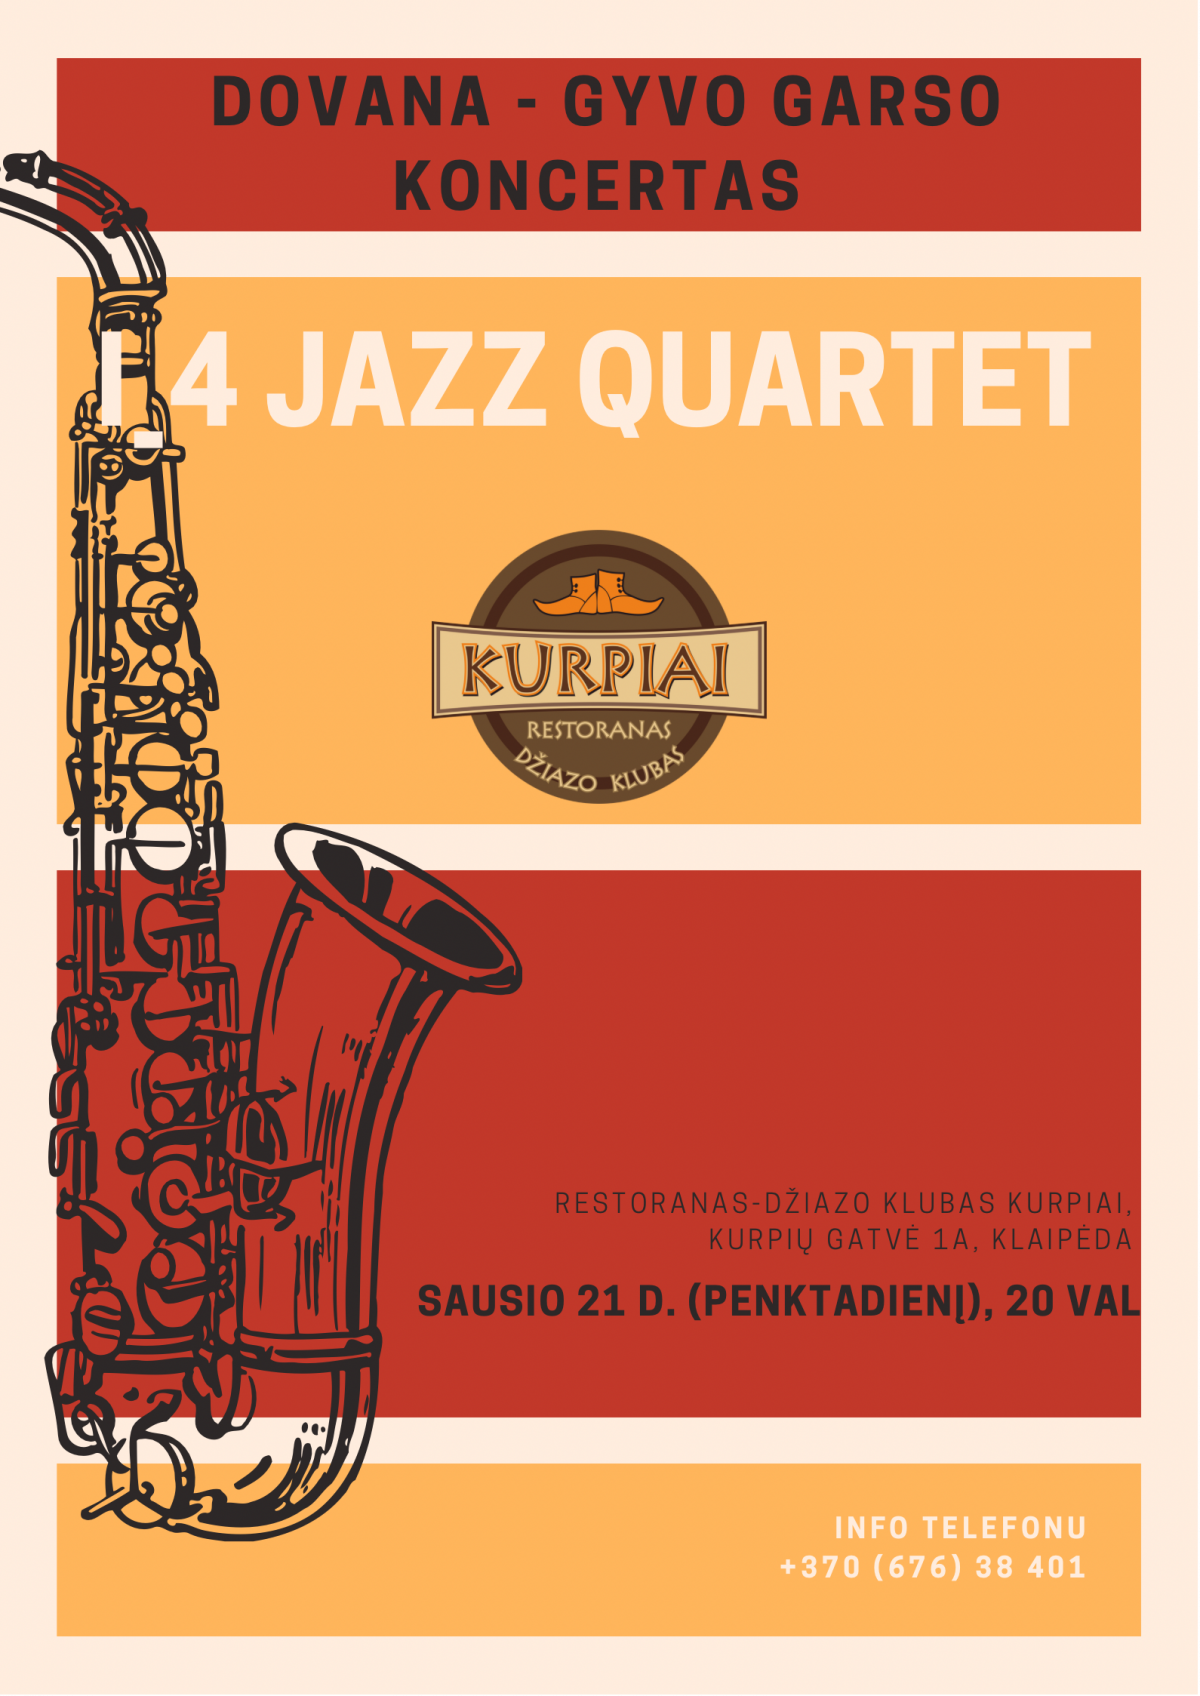 Gyvo garso koncertas - I_4 Jazz Quartet